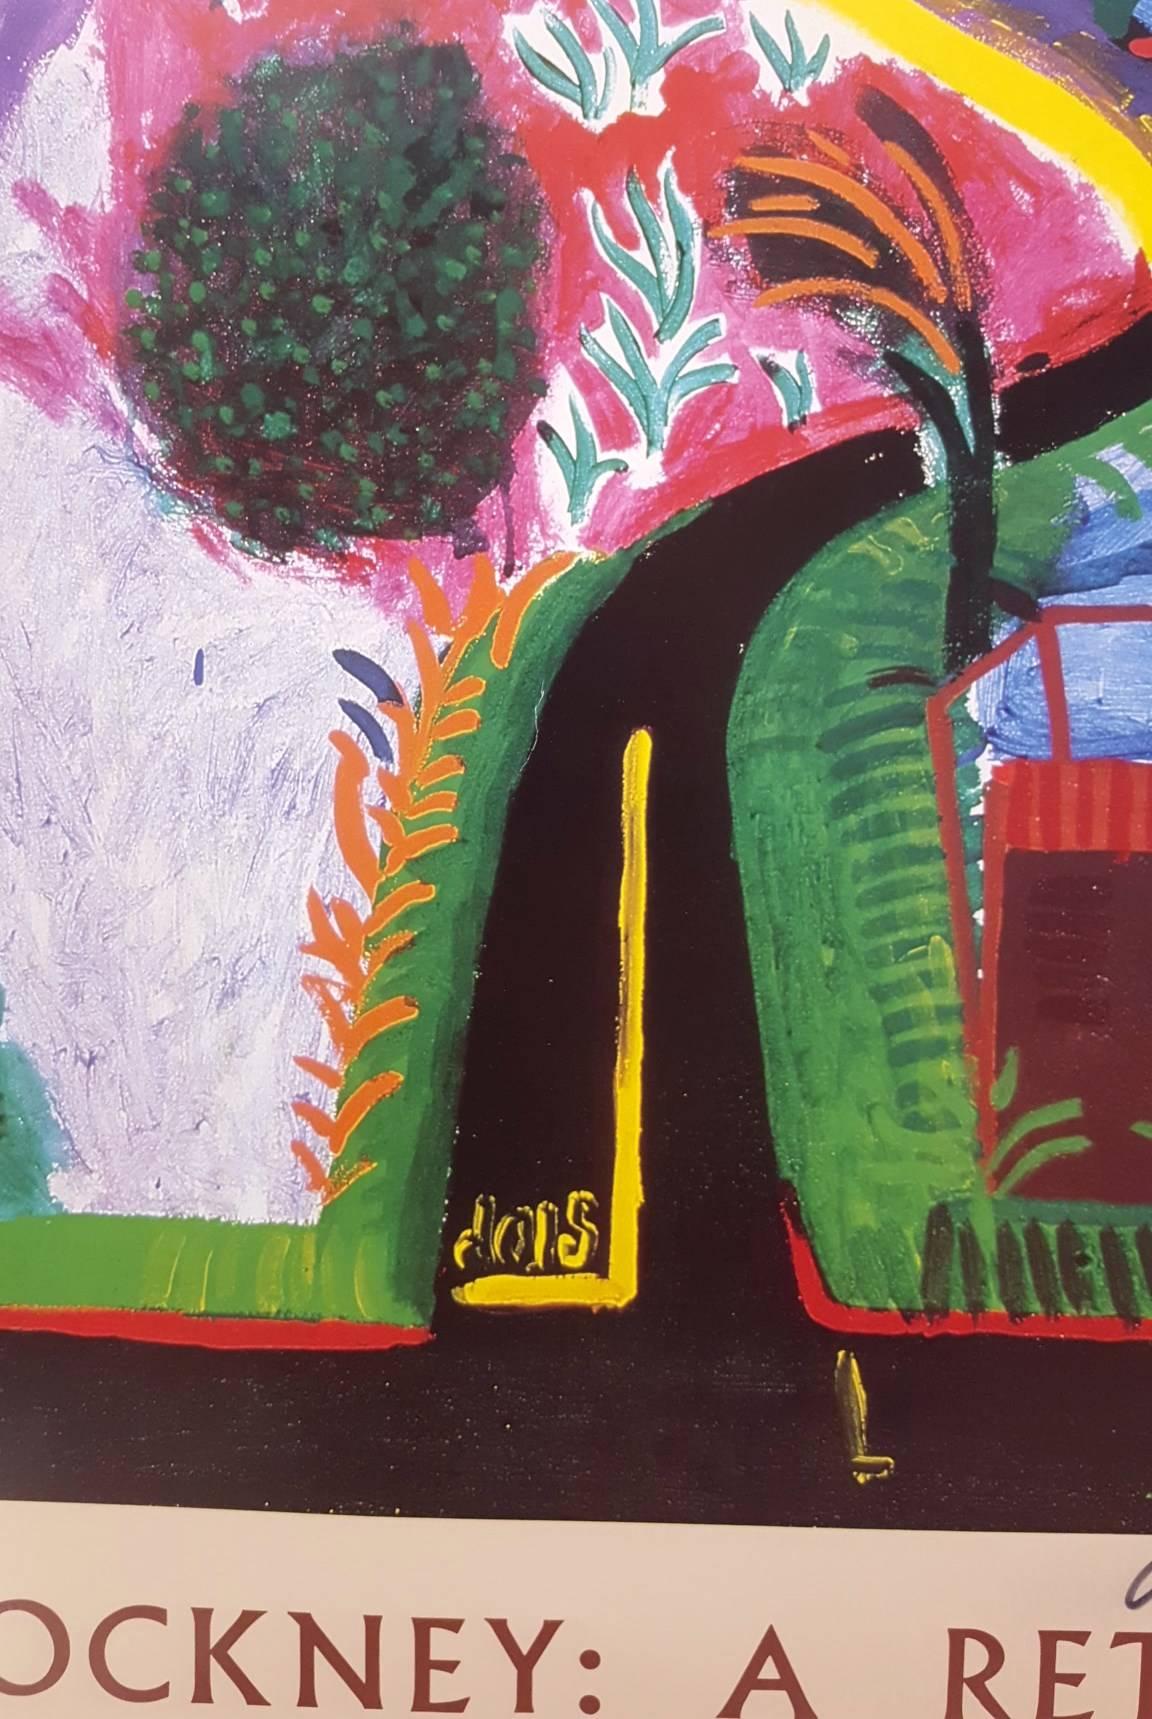 David Hockney: A Retrospective 1